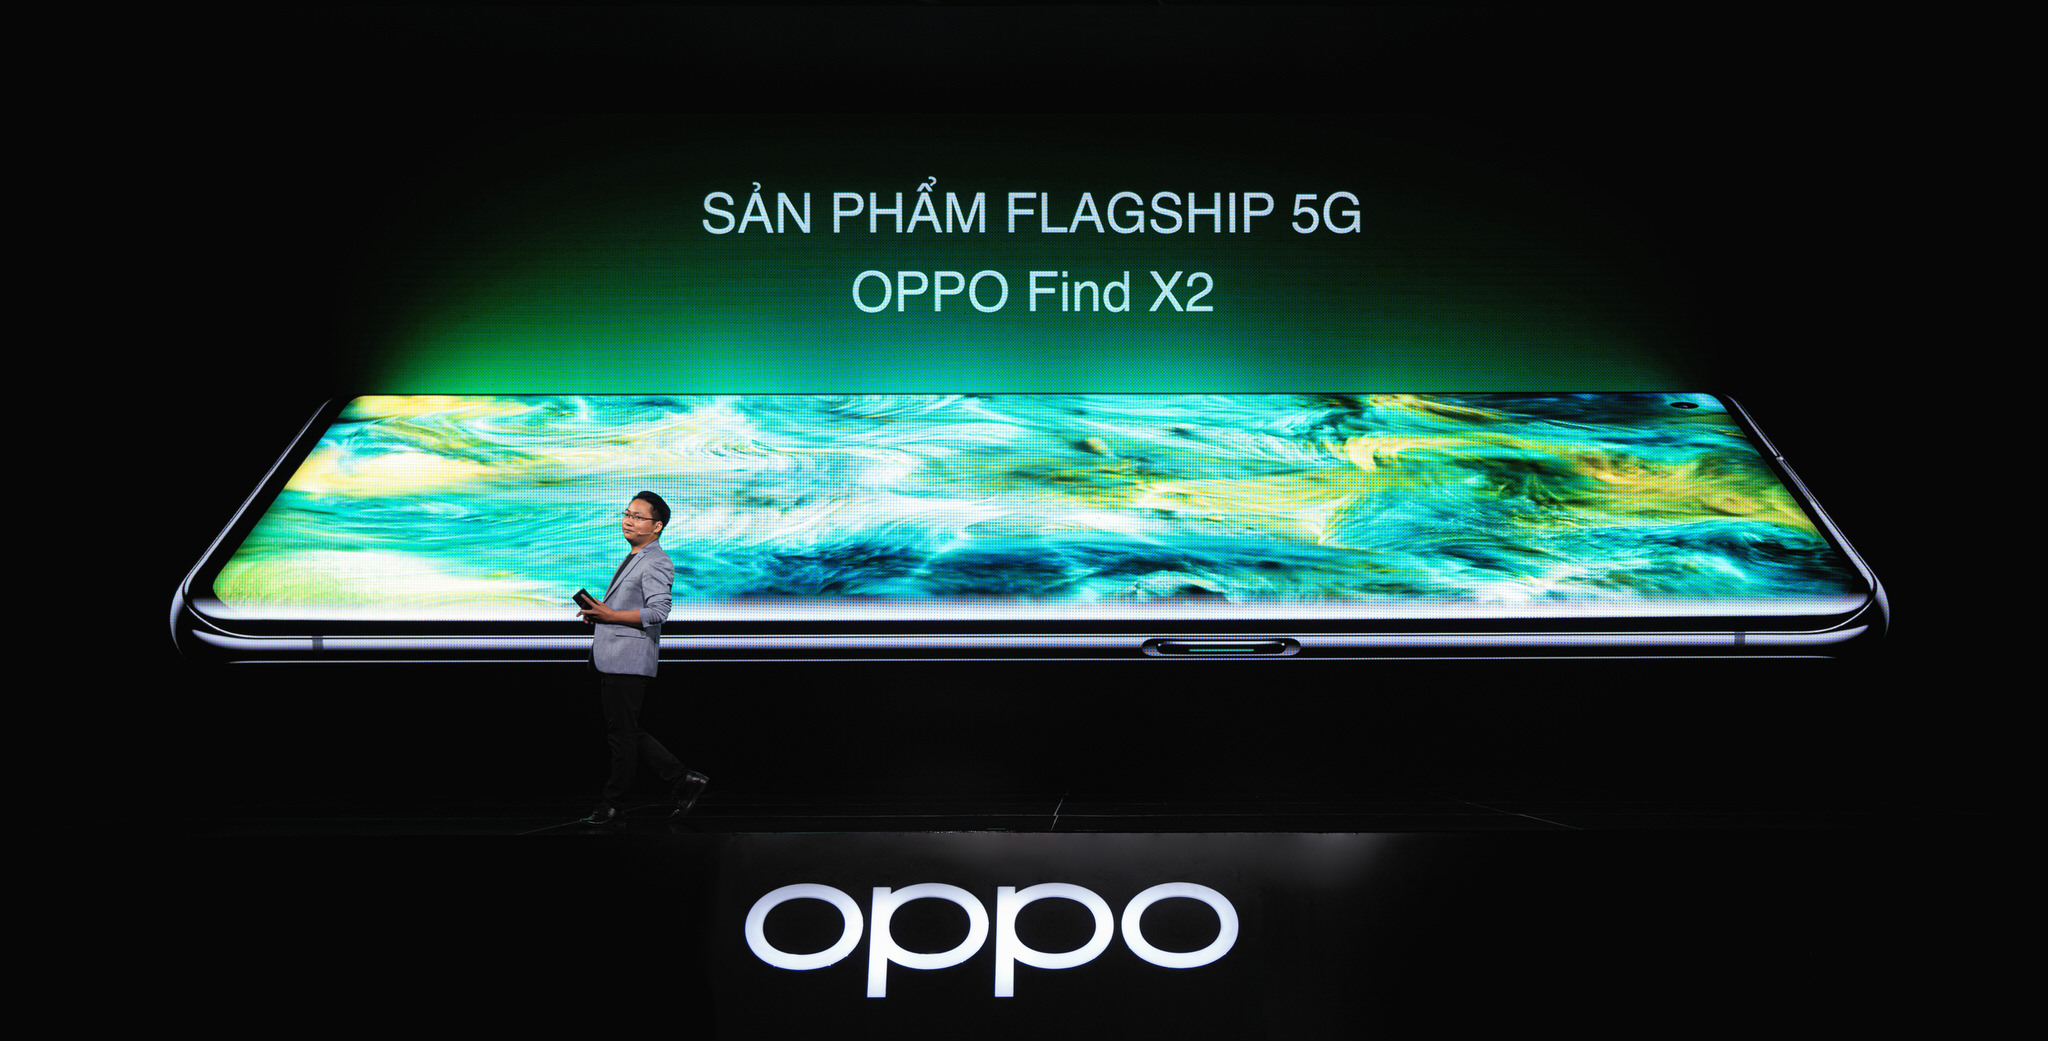 OPPO Find X2 ra mắt thị trường Việt giá 23,990,000 VND, flagship sẵn sàng 5G đầu tiên Việt Nam, đặt hàng tặng loa B&O gần 8 triệu